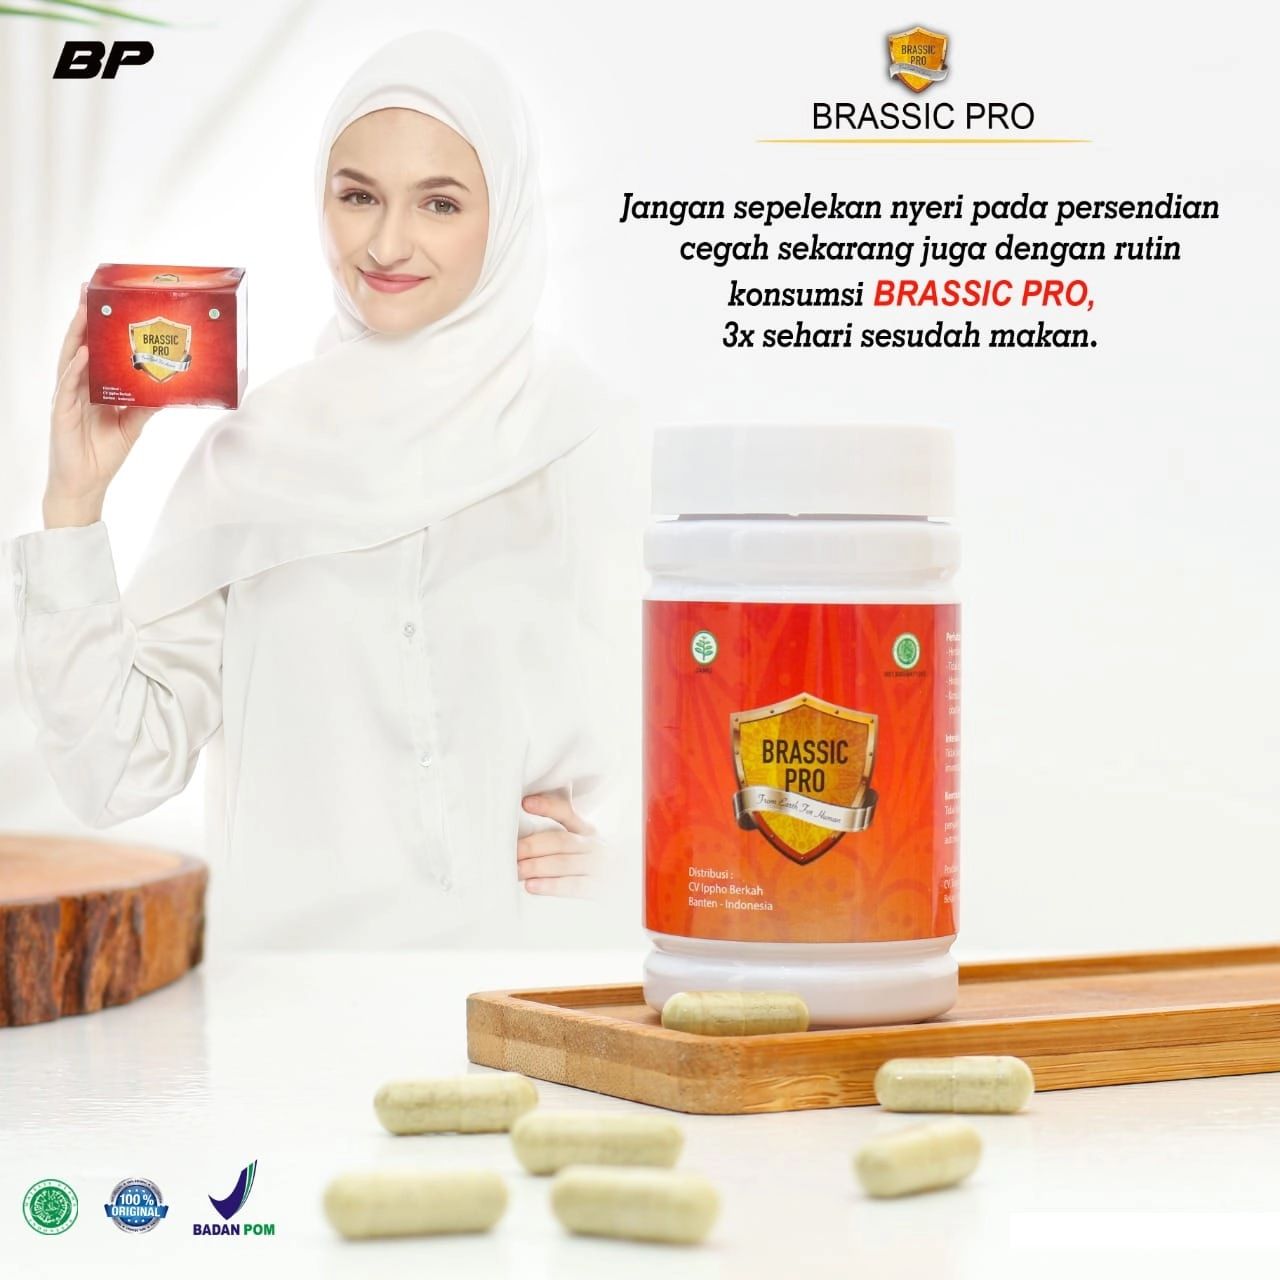 Jual Brassic Pro BP Suplemen Herbal Ipho Santosa